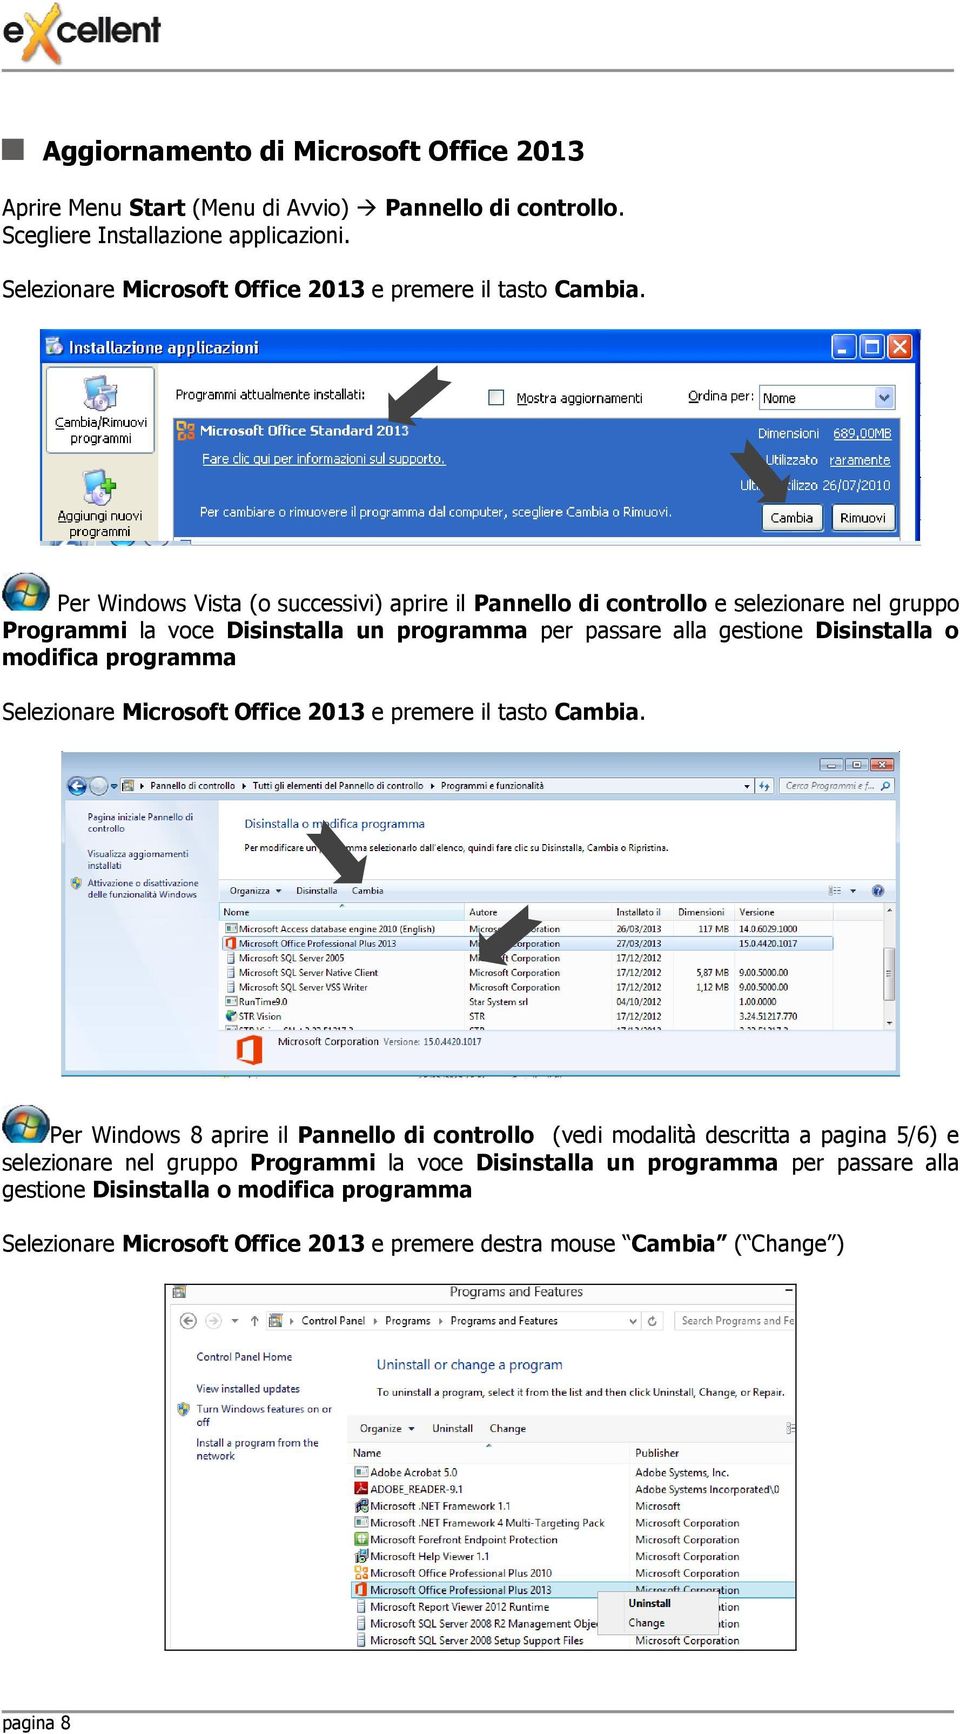 Per Windows Vista (o successivi) aprire il Pannello di controllo e selezionare nel gruppo Programmi la voce Disinstalla un programma per passare alla gestione Disinstalla o modifica